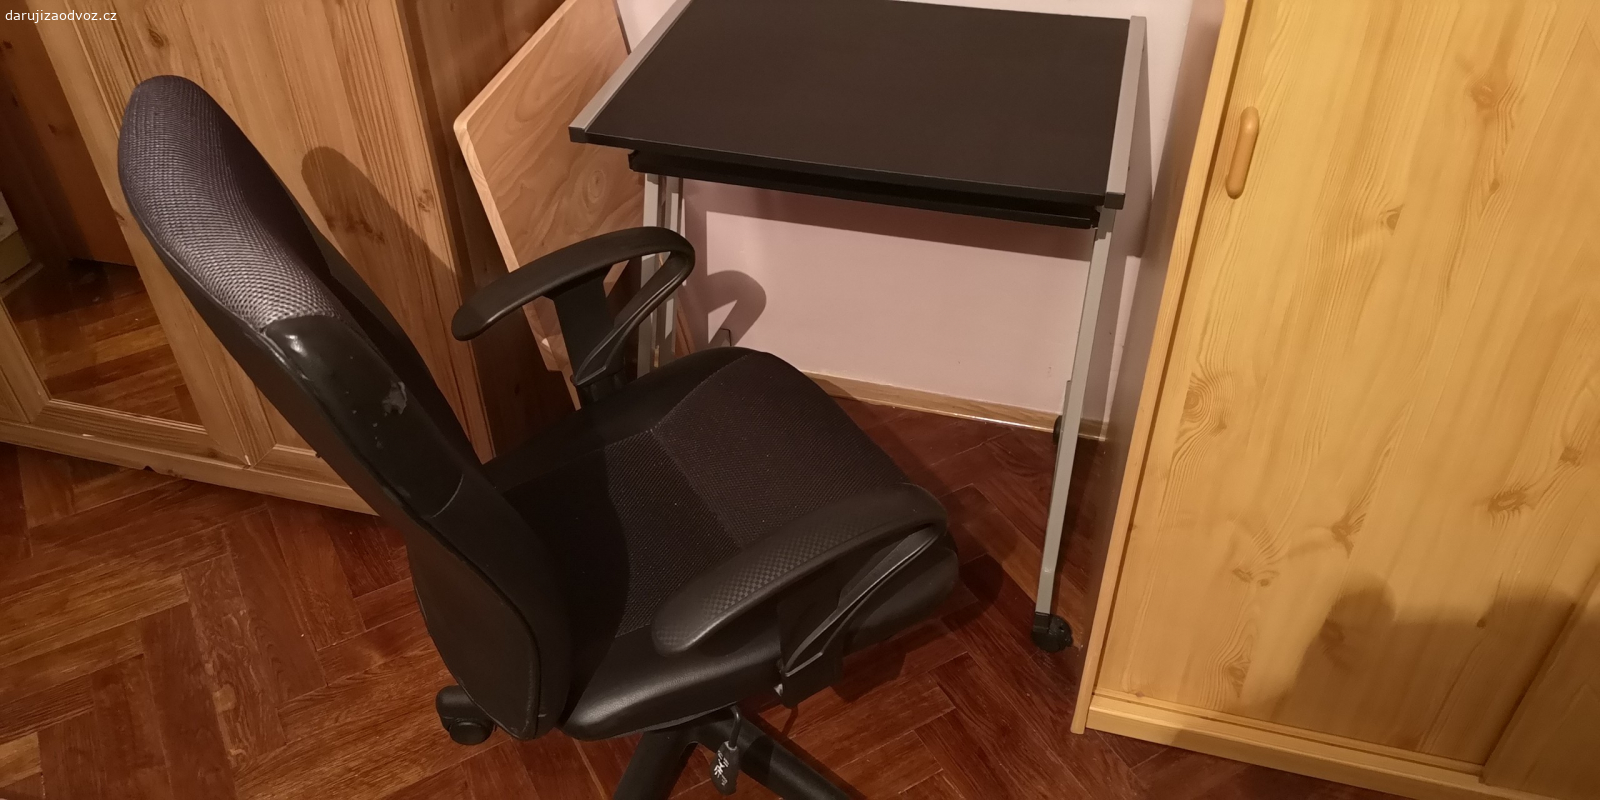 Židle a stůl. Daruji za odvoz kancelářskou židli a stolek 65cm x 50cm